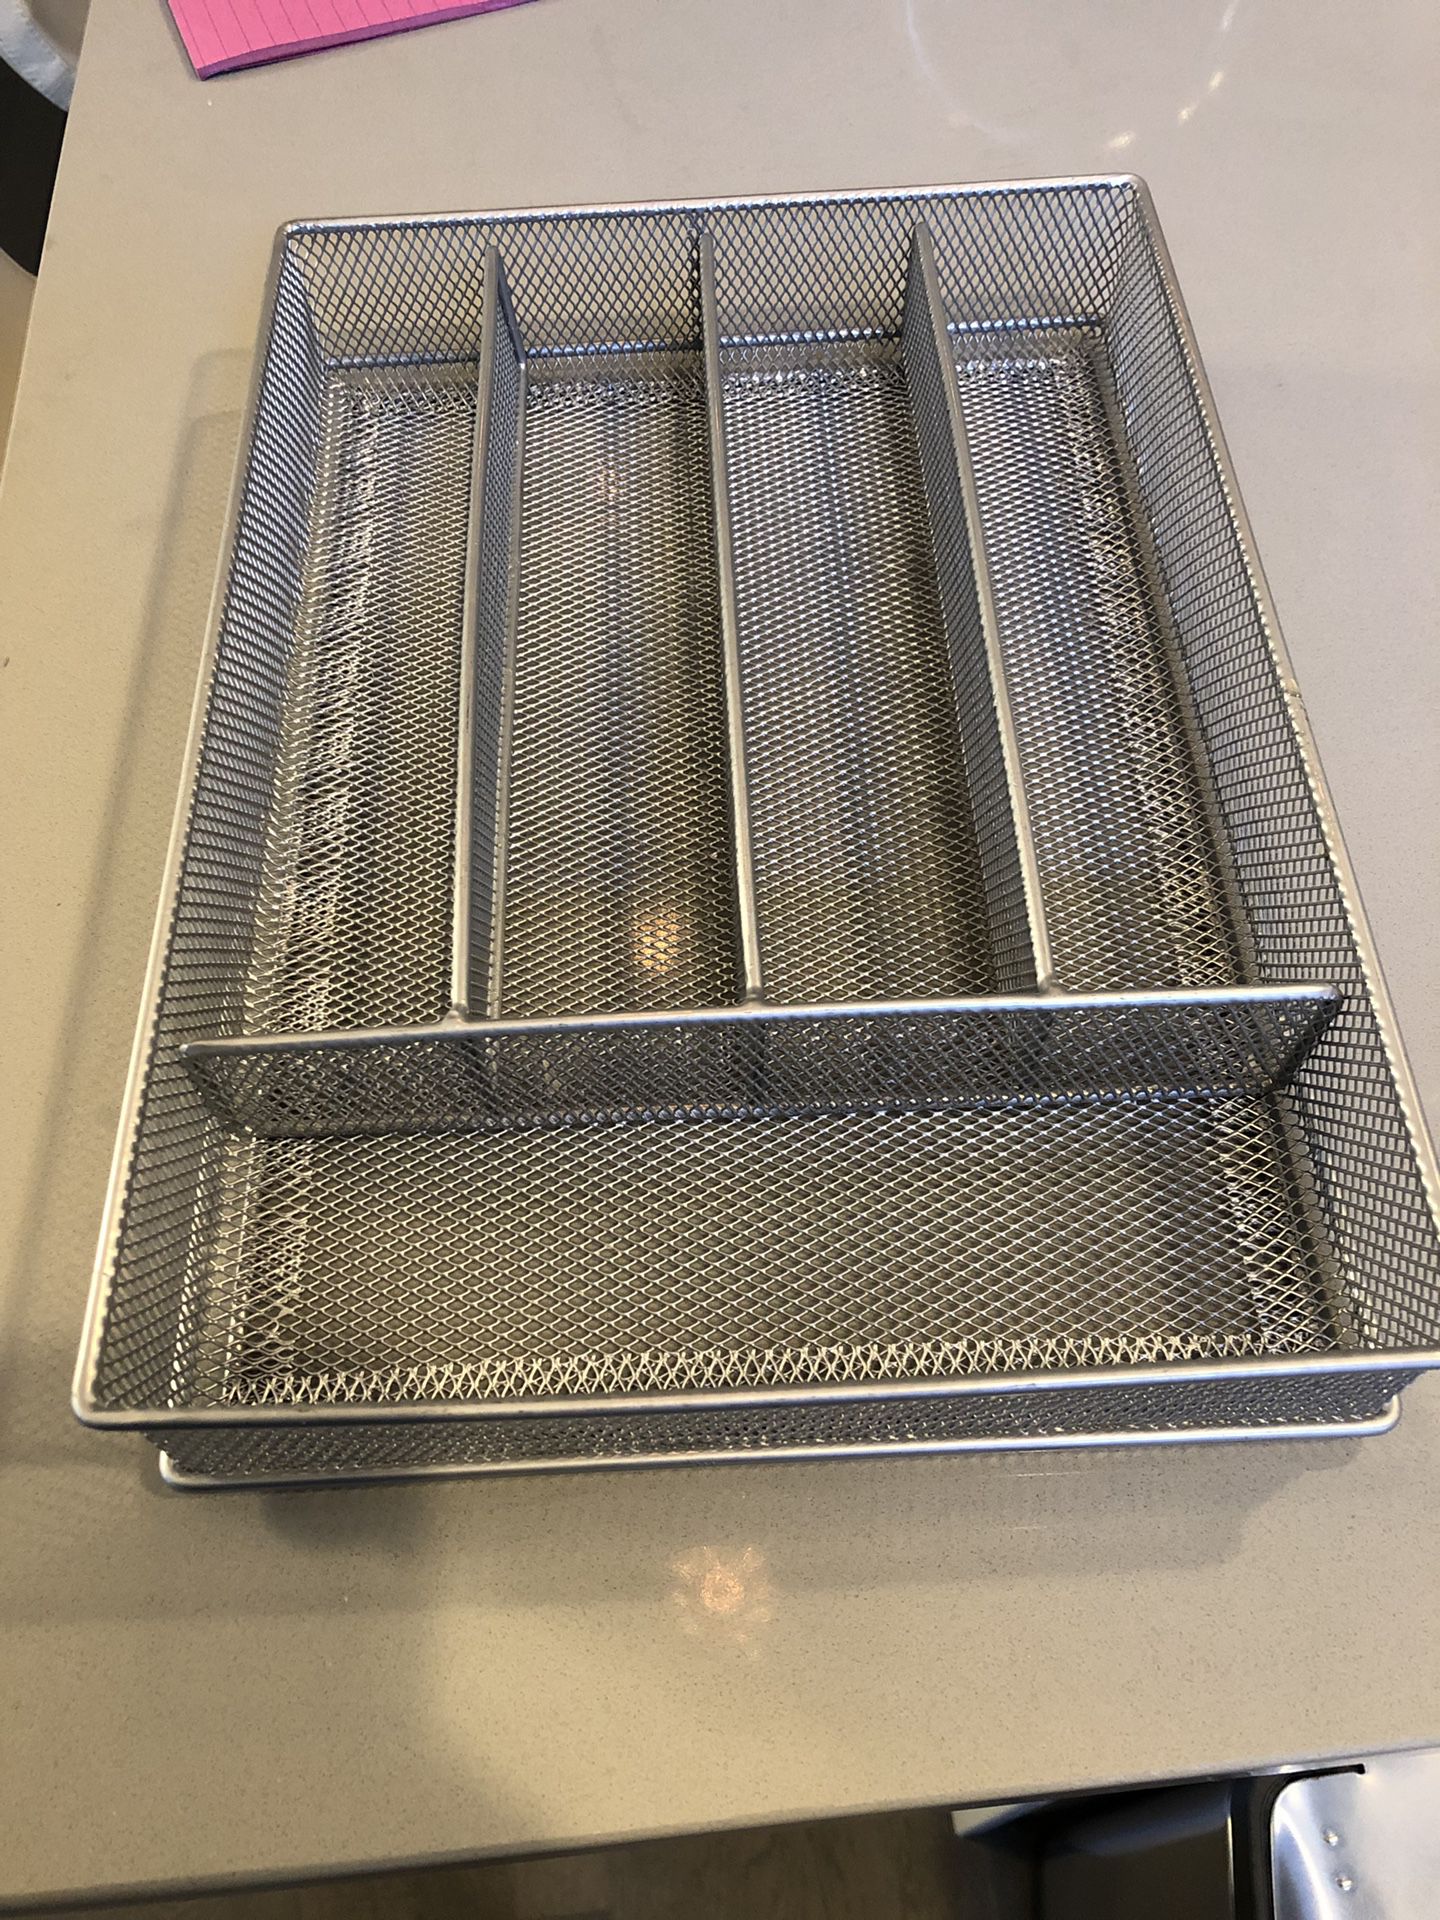 Utensil organizer (silverware drawer, kitchen, office)